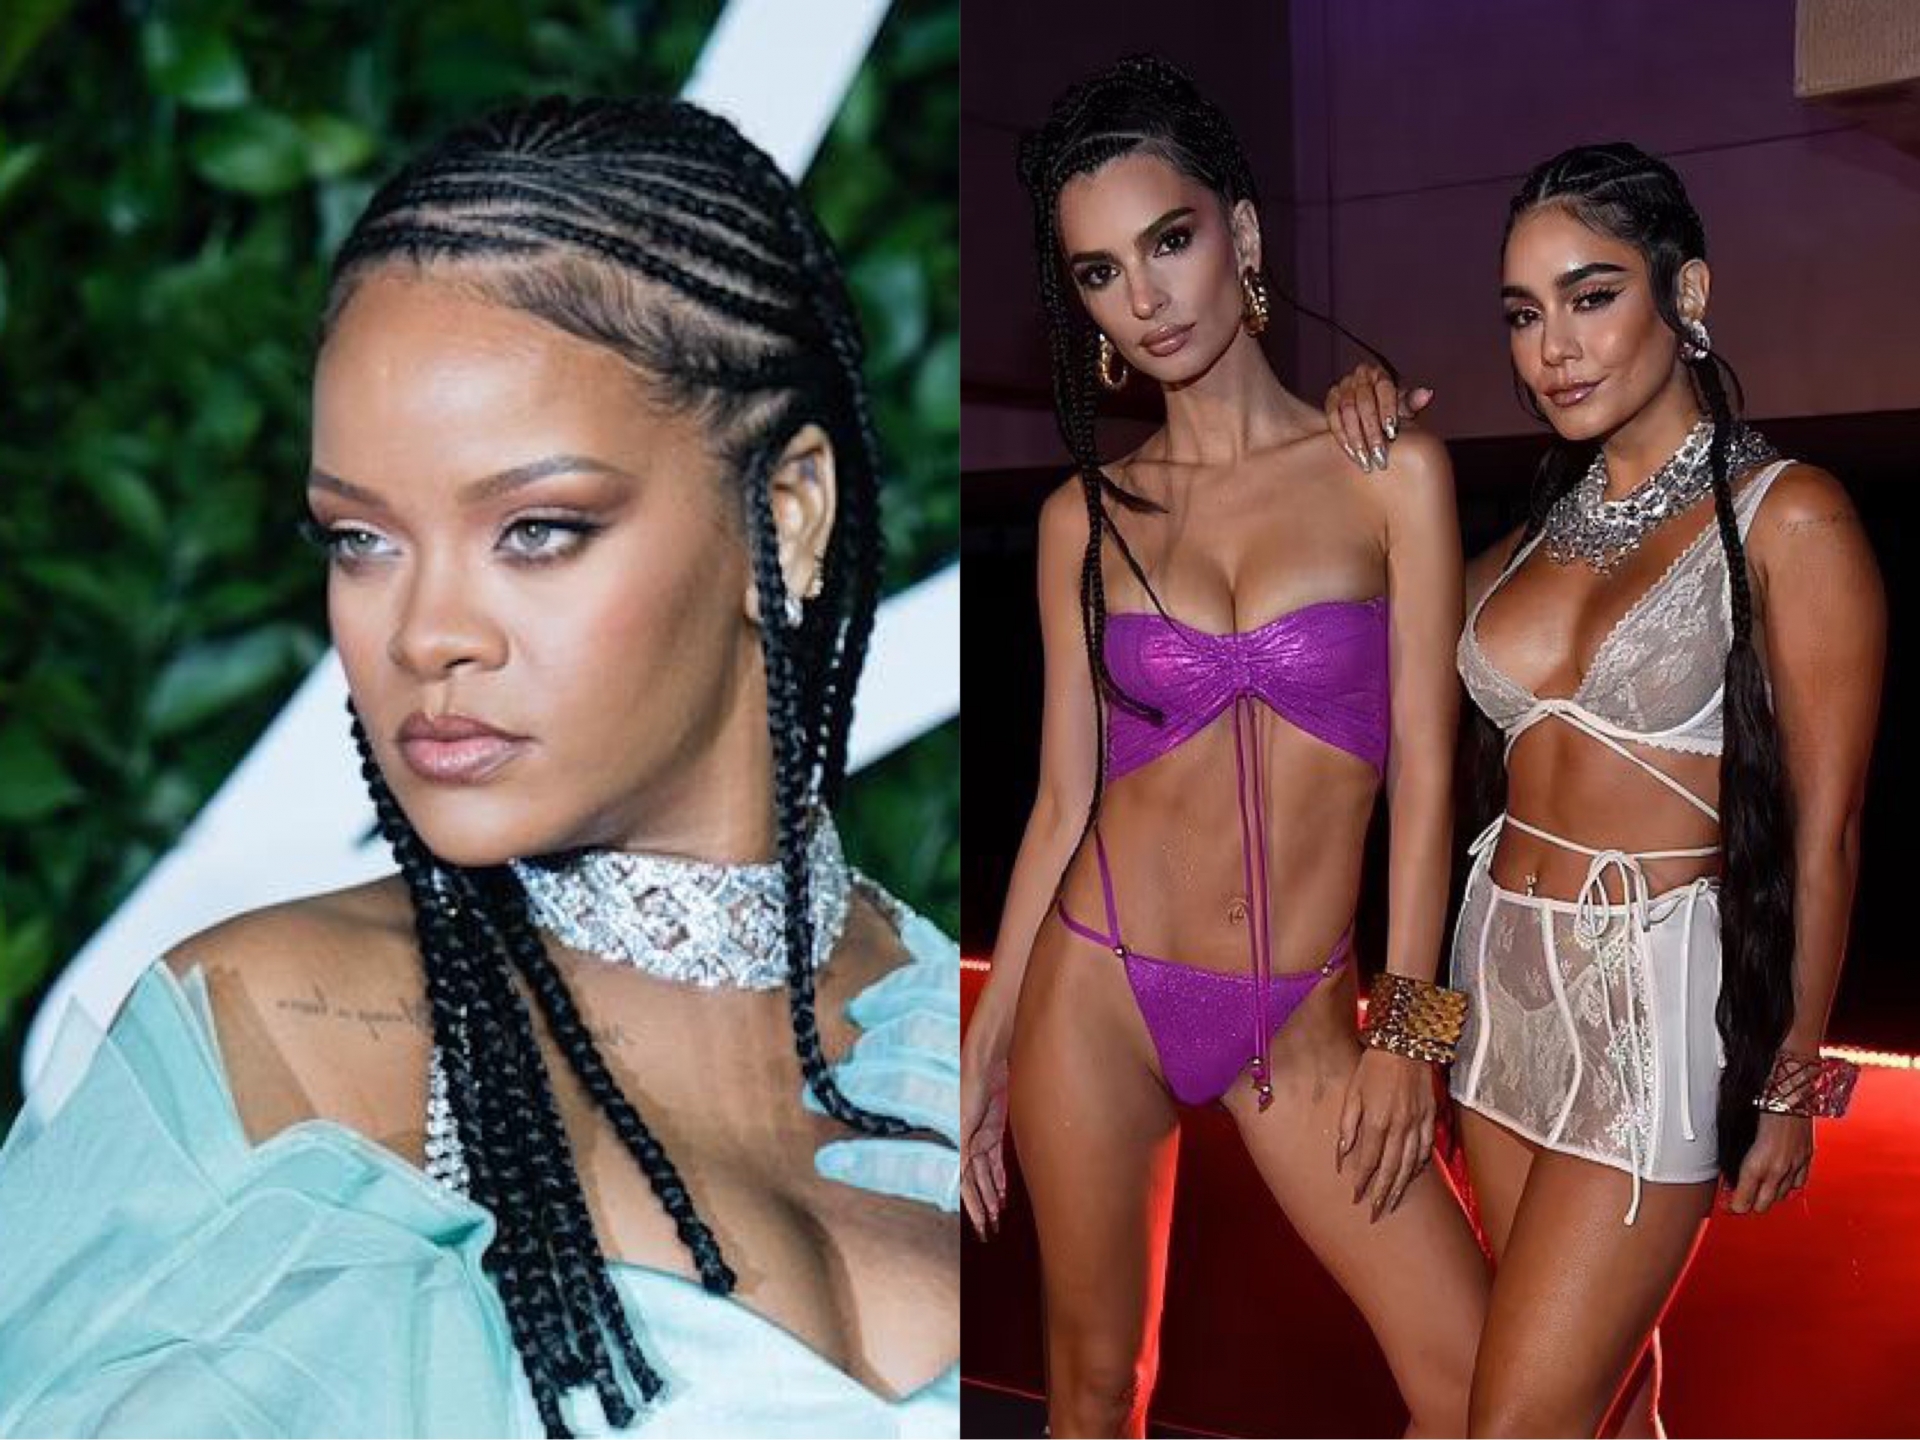 Rihanna cũng diện tóc cornrow nhưng được khen ngợi vì là người da màu. Còn Vanessa Hudgens và Emily Ratajkowski lại nhận nhiều chỉ trích vì là người da trắng.